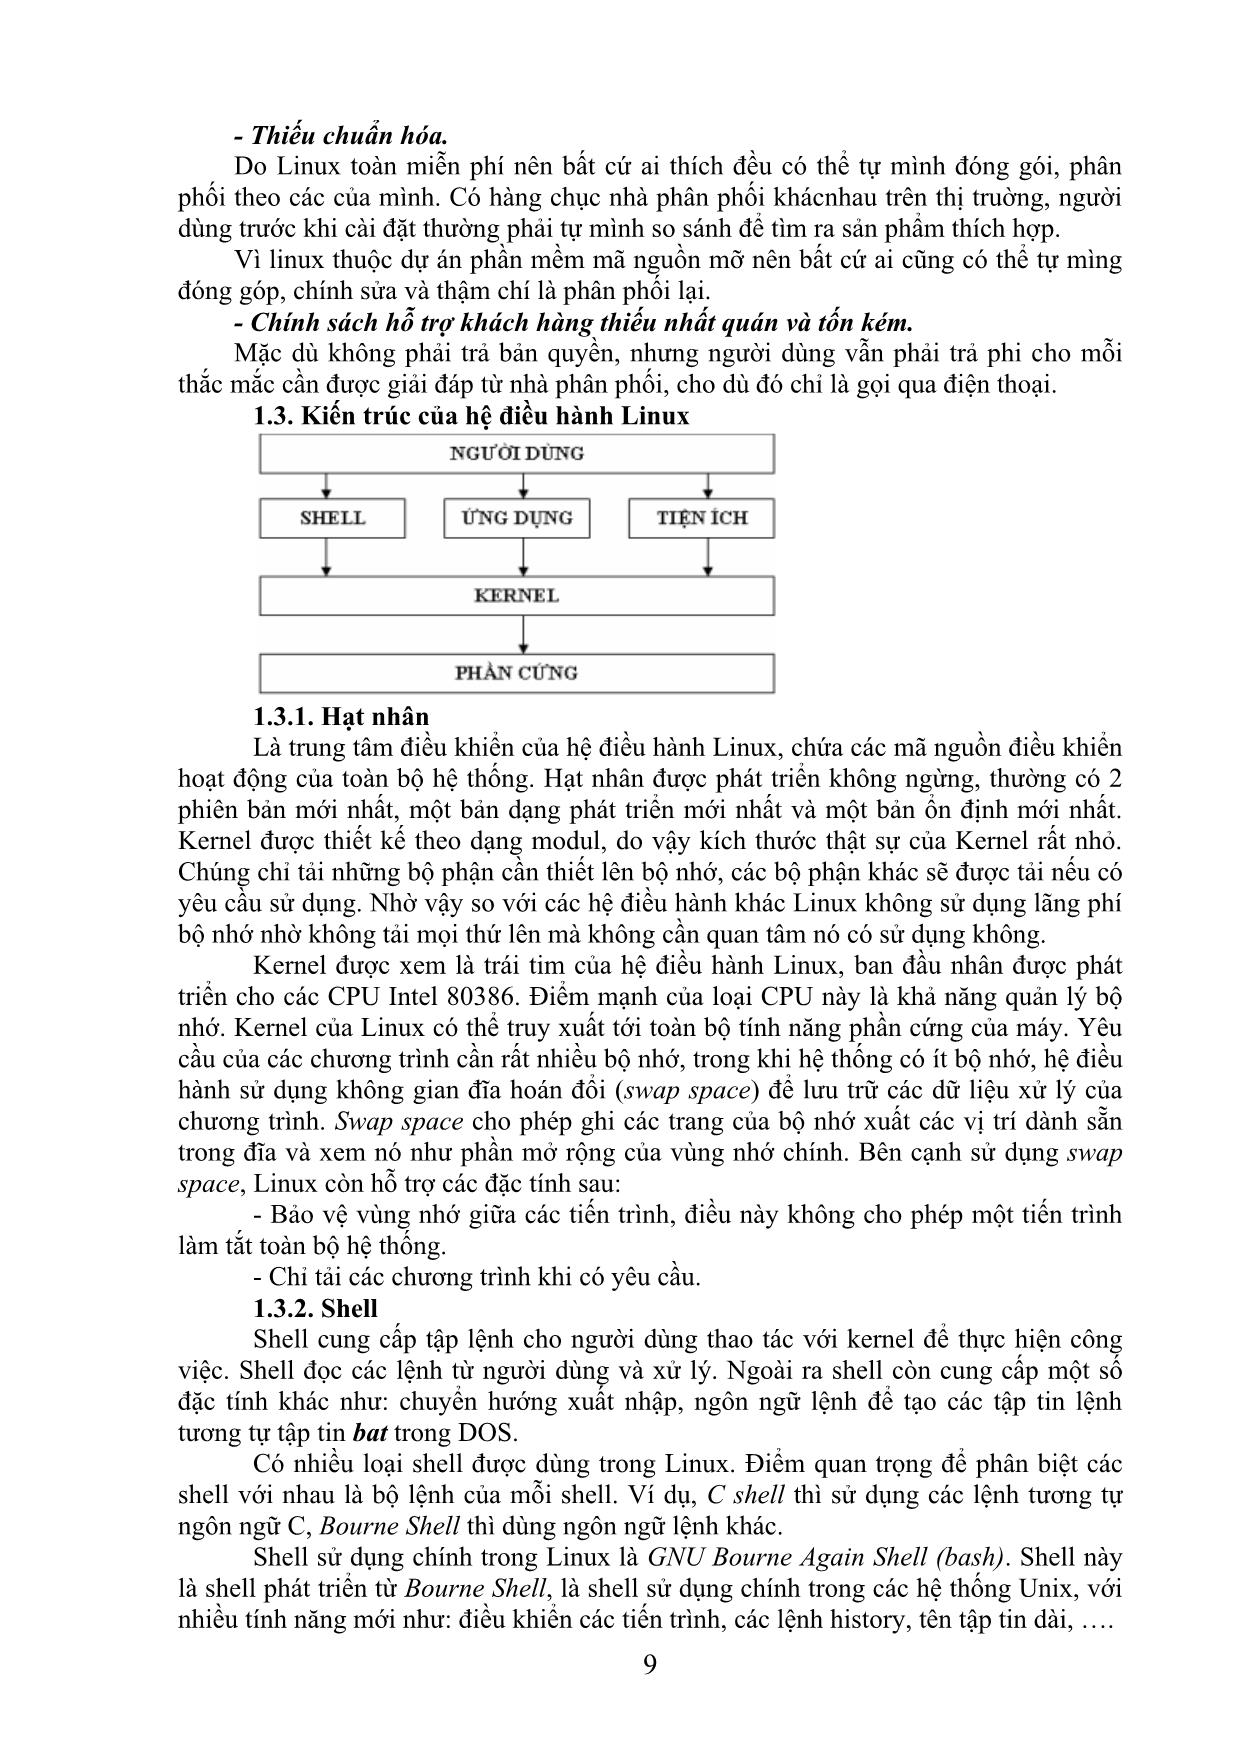 Giáo trình Hệ điều hành Linux trang 9